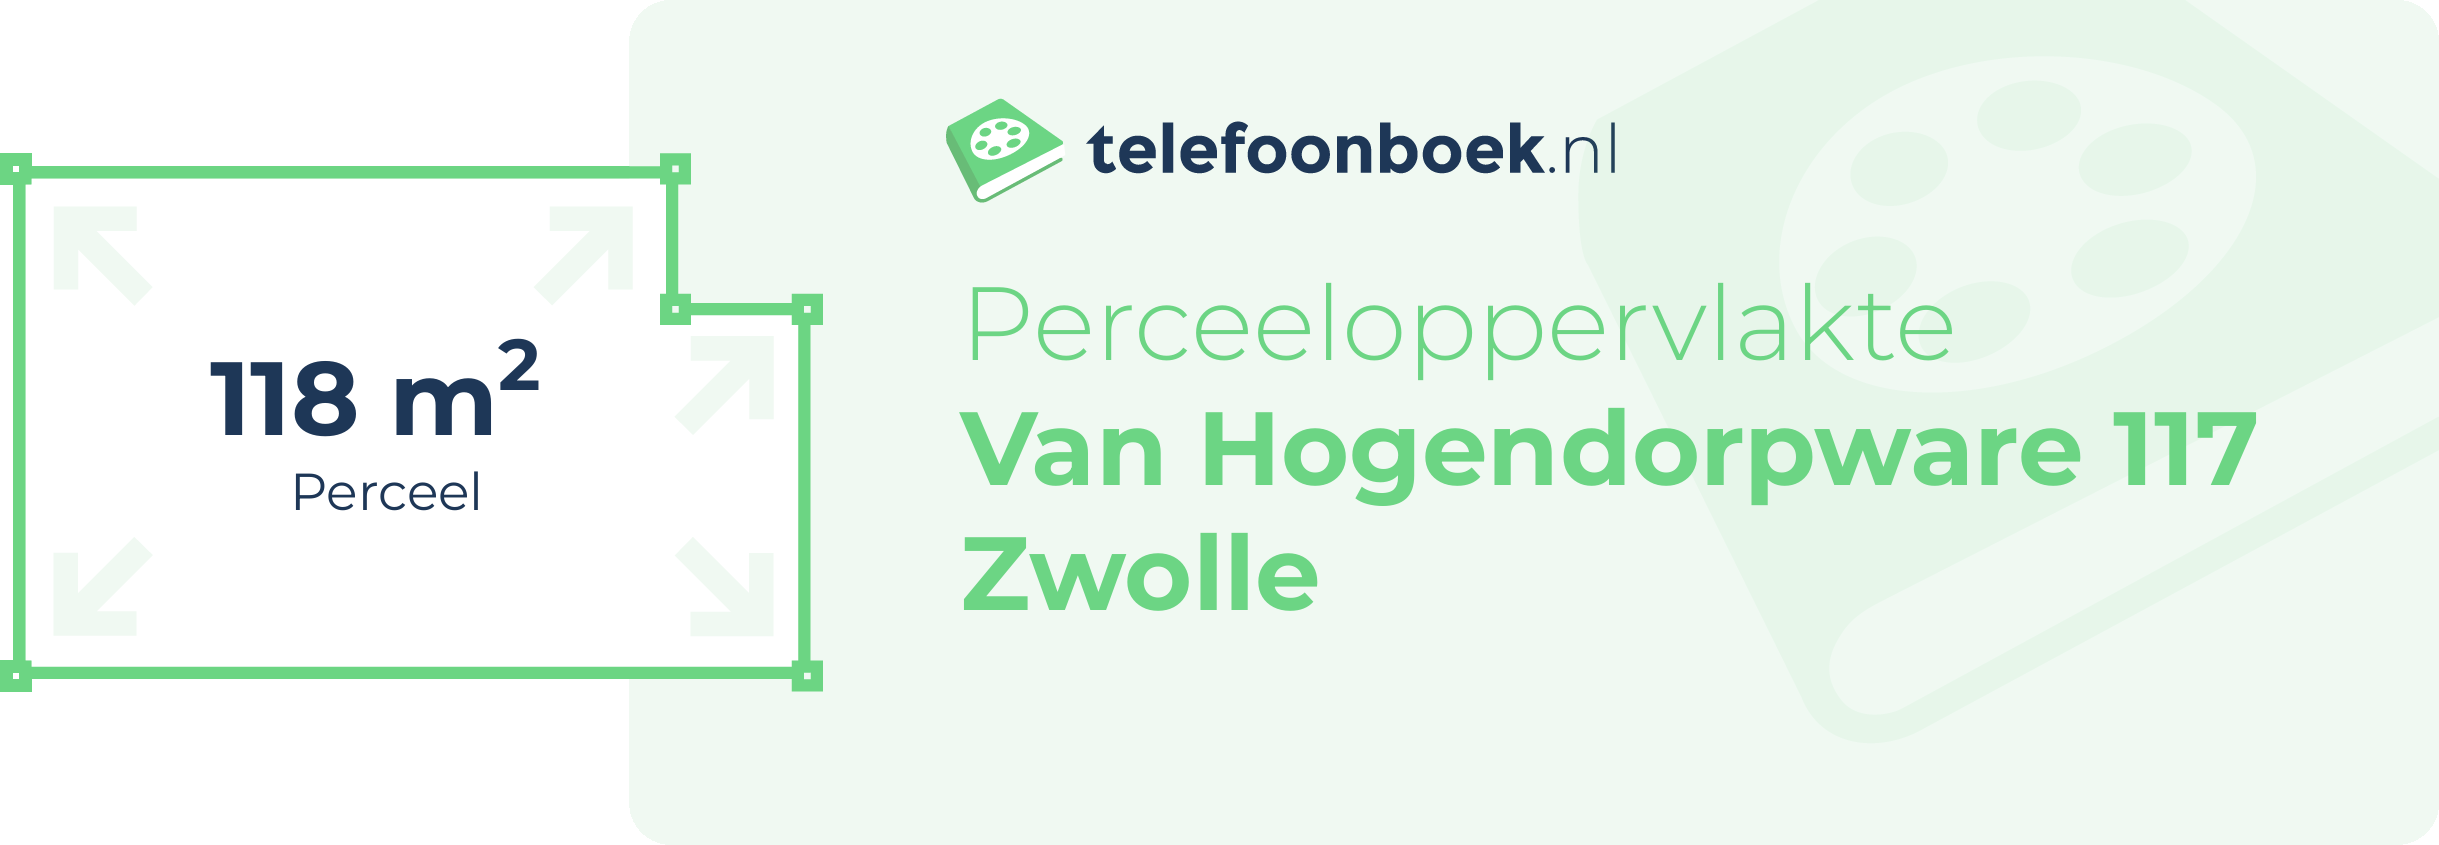 Perceeloppervlakte Van Hogendorpware 117 Zwolle